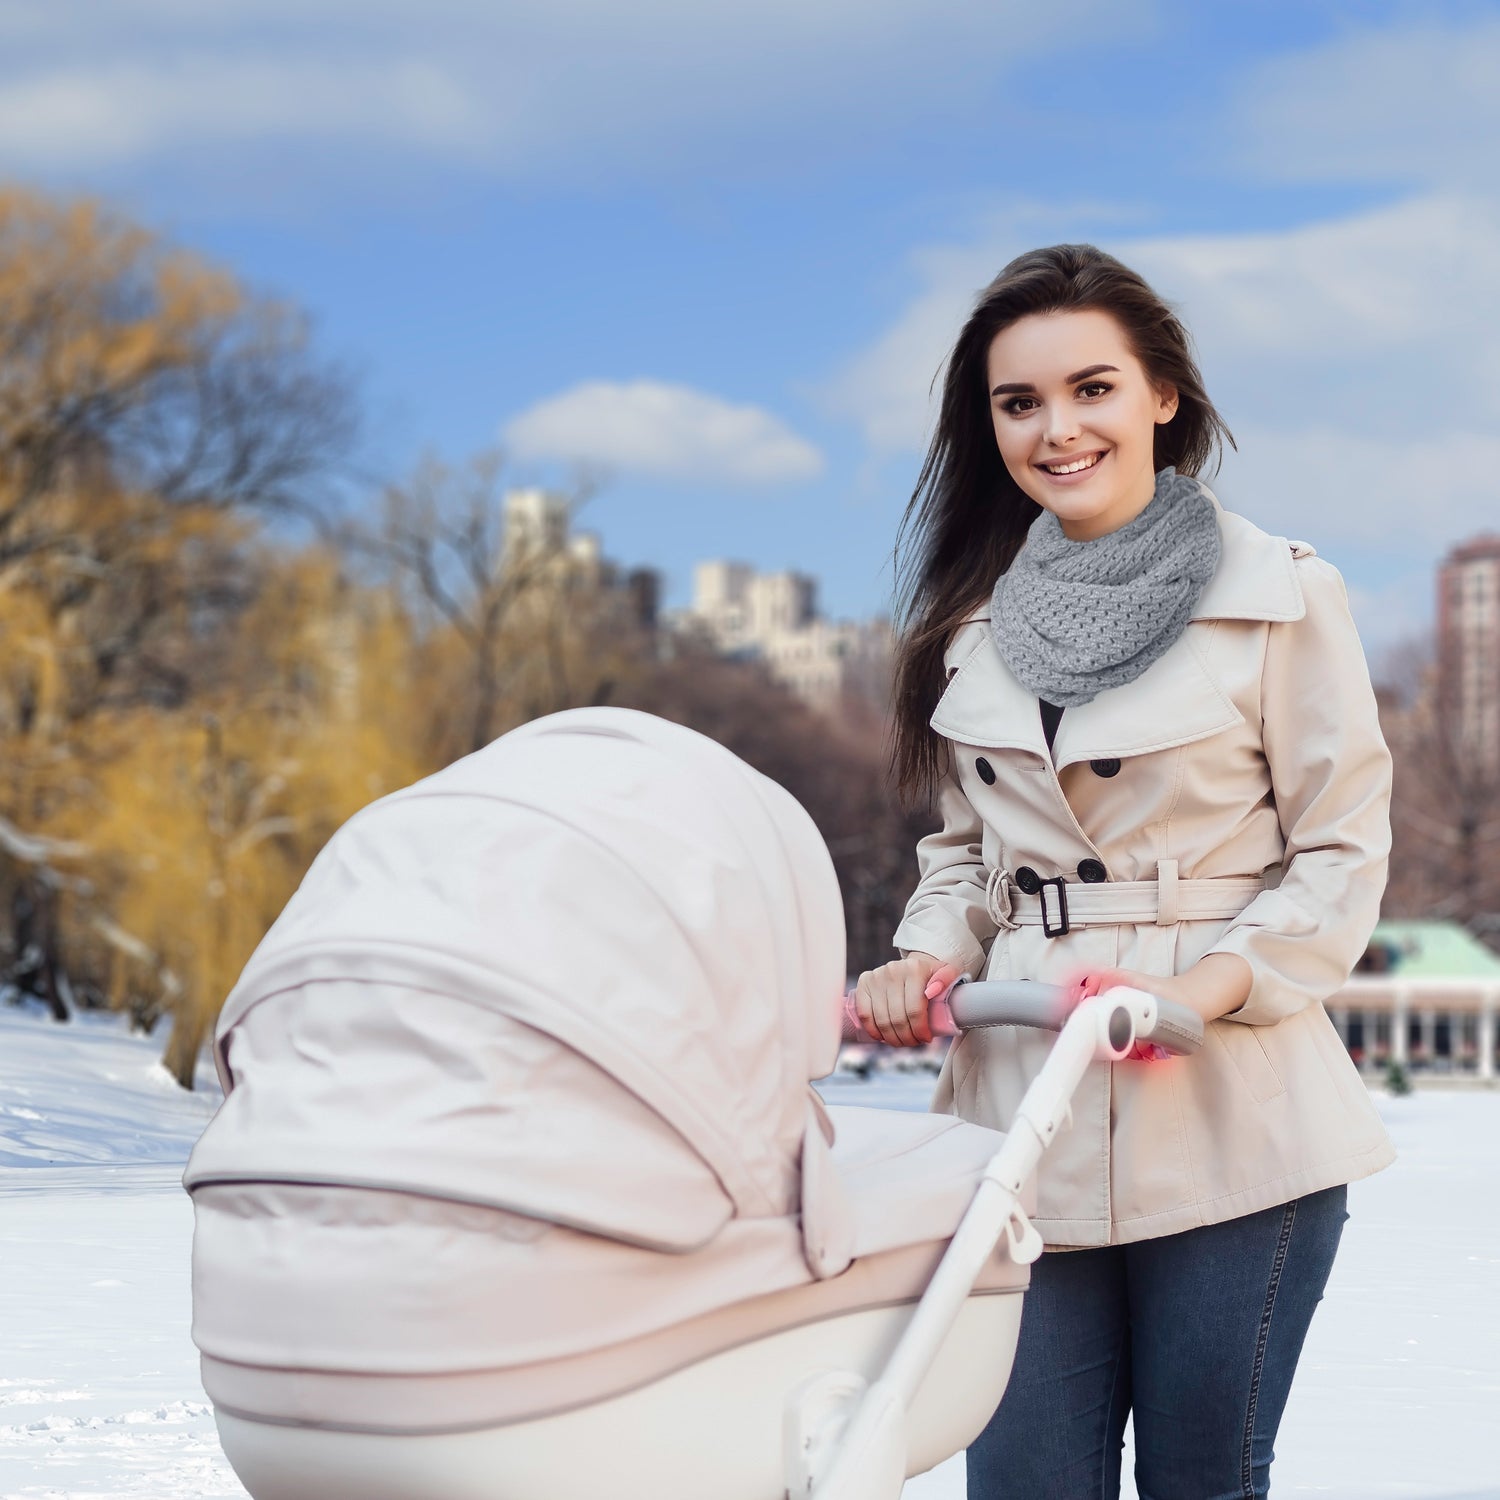 Frau spaziert in der Natur mit Handwärmer Kinderwagen und Taschenwärmer